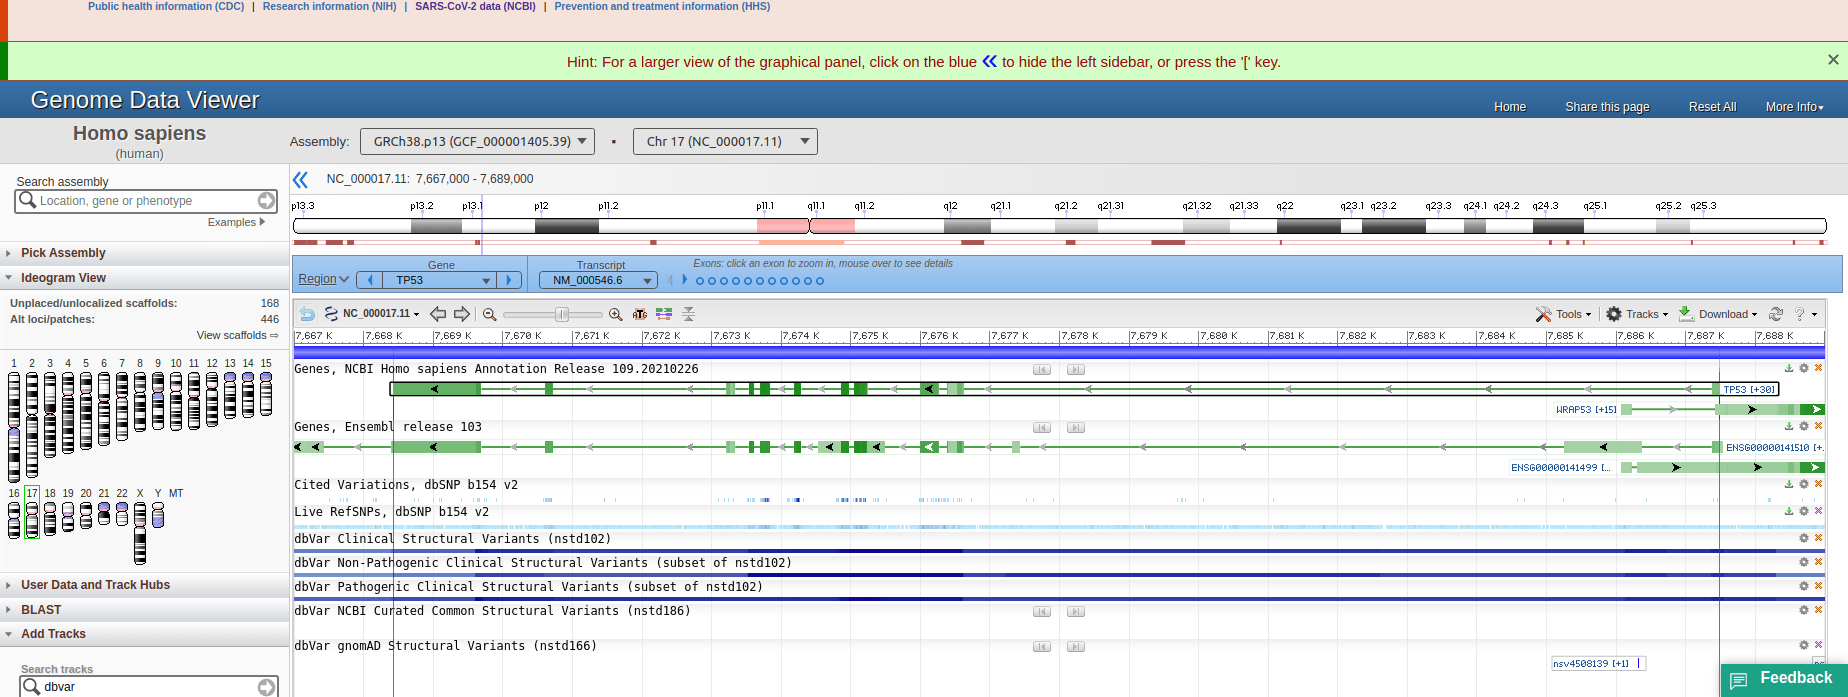 screenshot of NCBI Genome Data Viewer